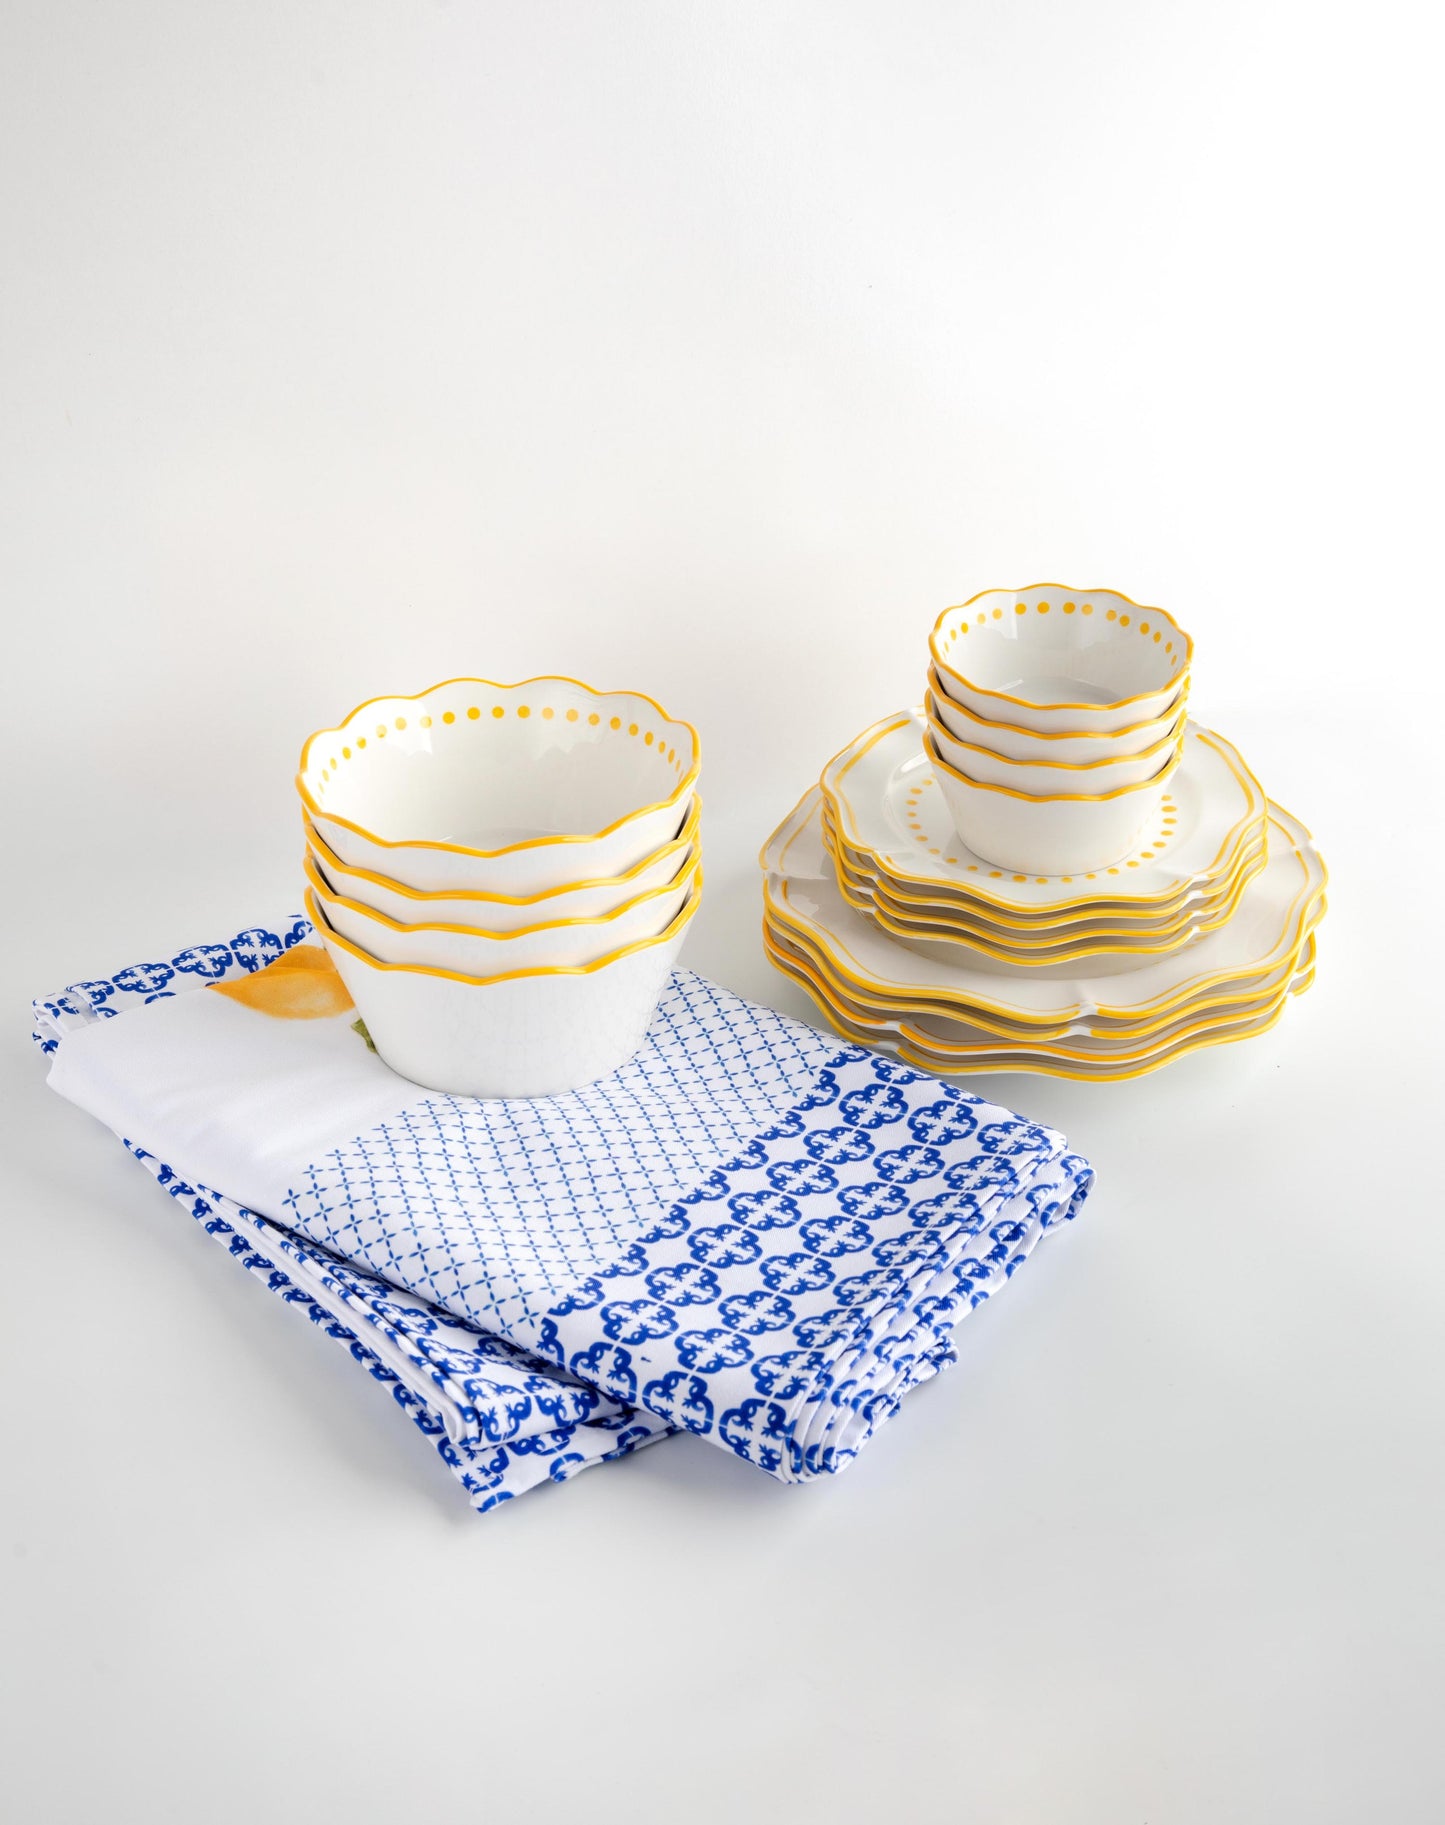 Capri Plates, Bowls & Tablecloth